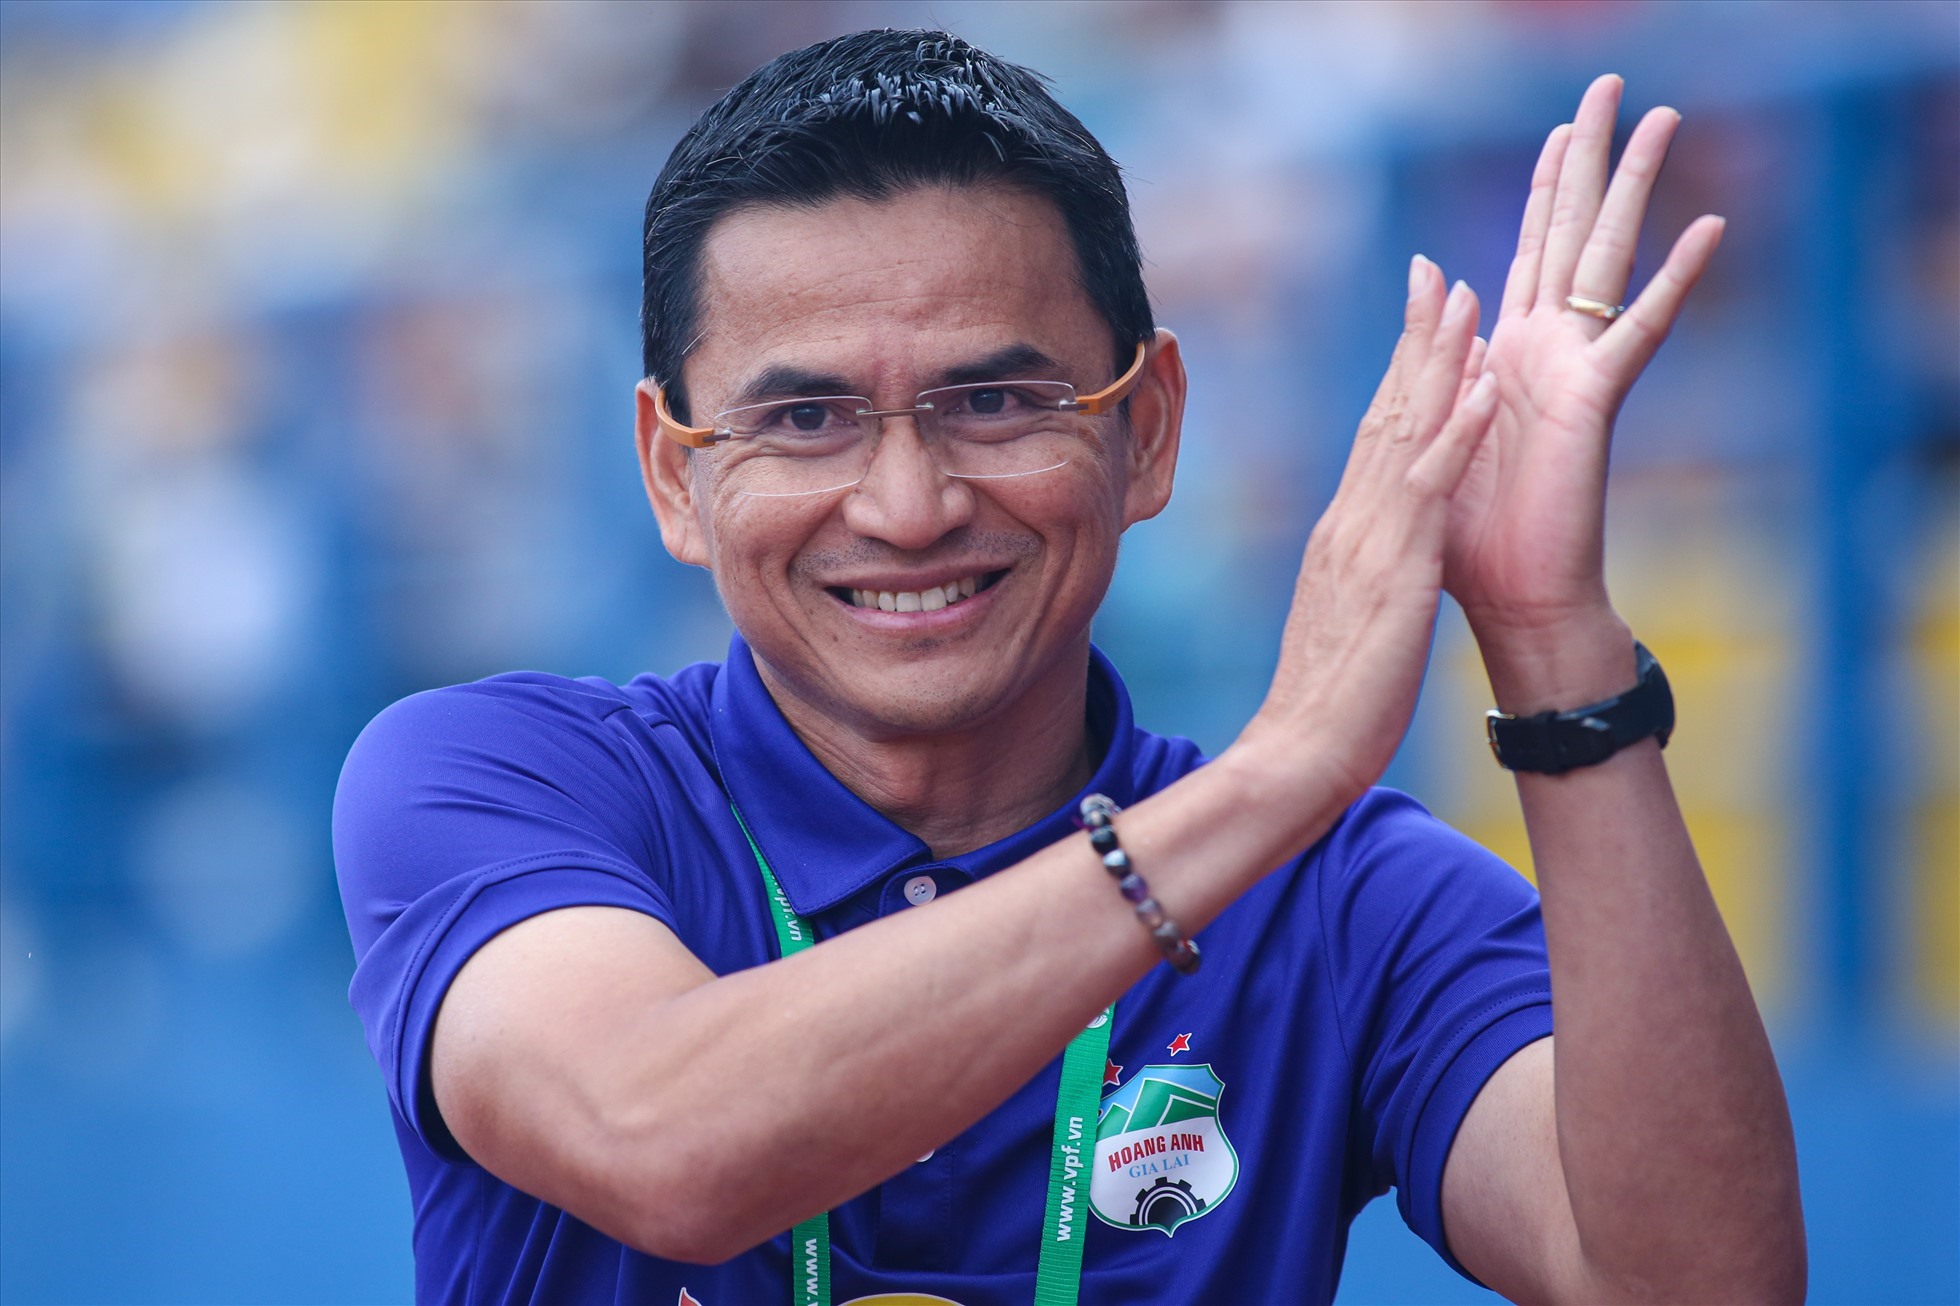 Tin sáng (23/10): Các cầu thủ ĐT Thái Lan có “chặn đường” trở lại của HLV Kiatisak? - Ảnh 1.